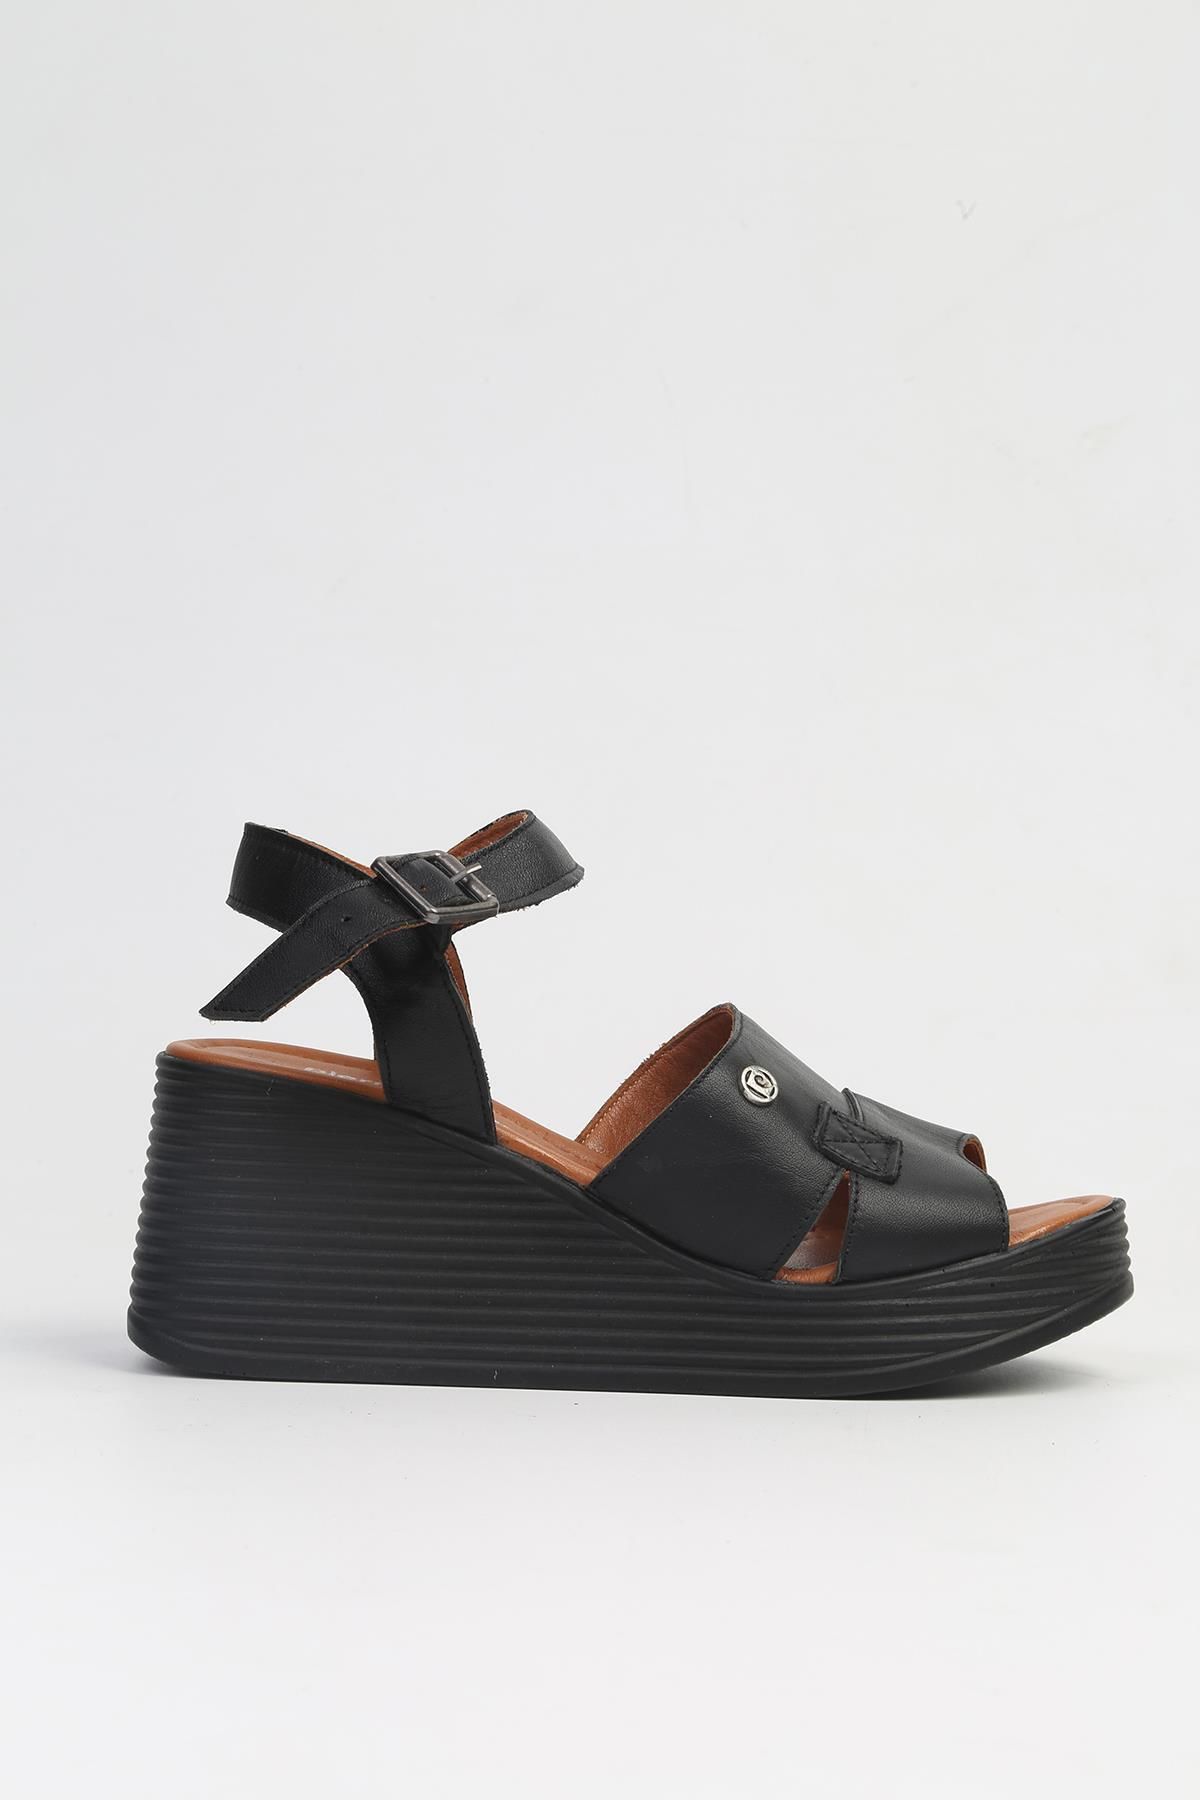 Pierre Cardin ® | PC-7061 Siyah-Kadın Dolgu Topuk Ayakkabı